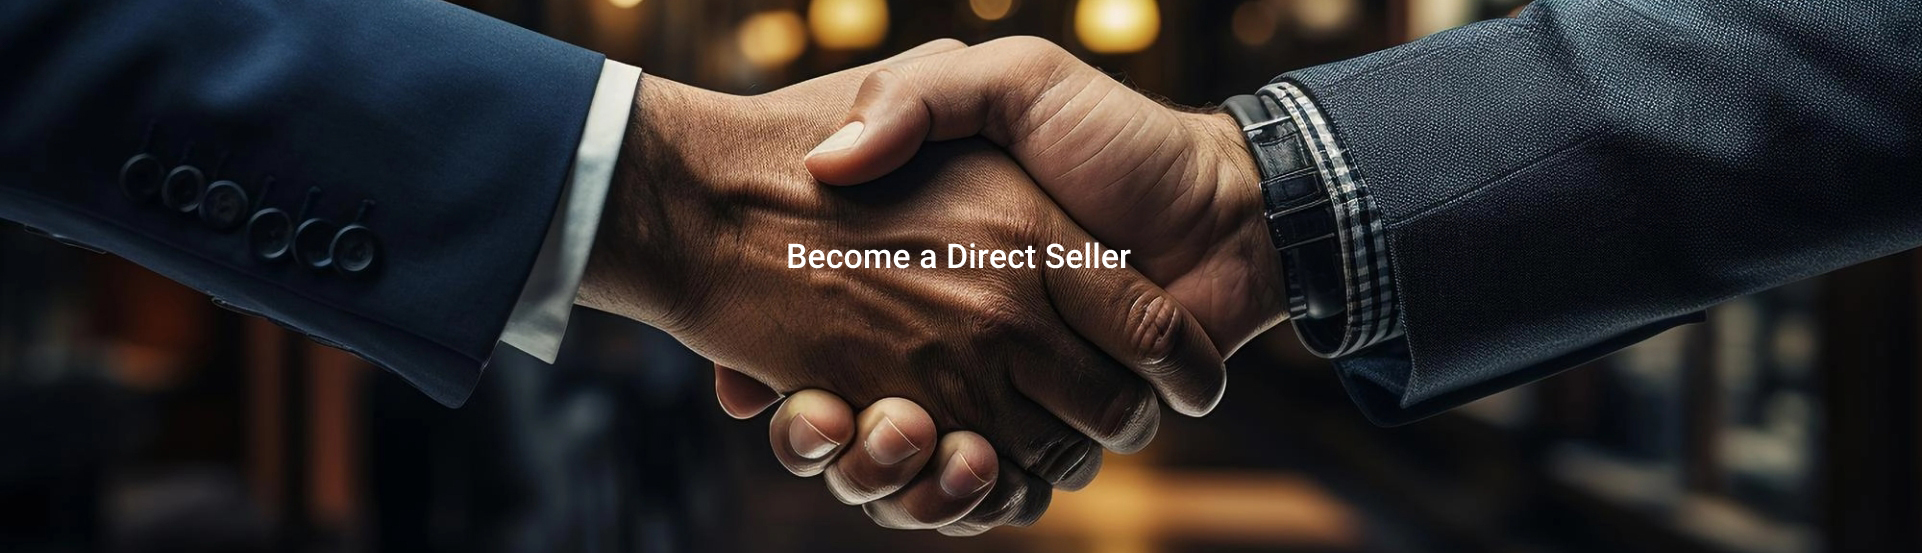 direct-seller-banner